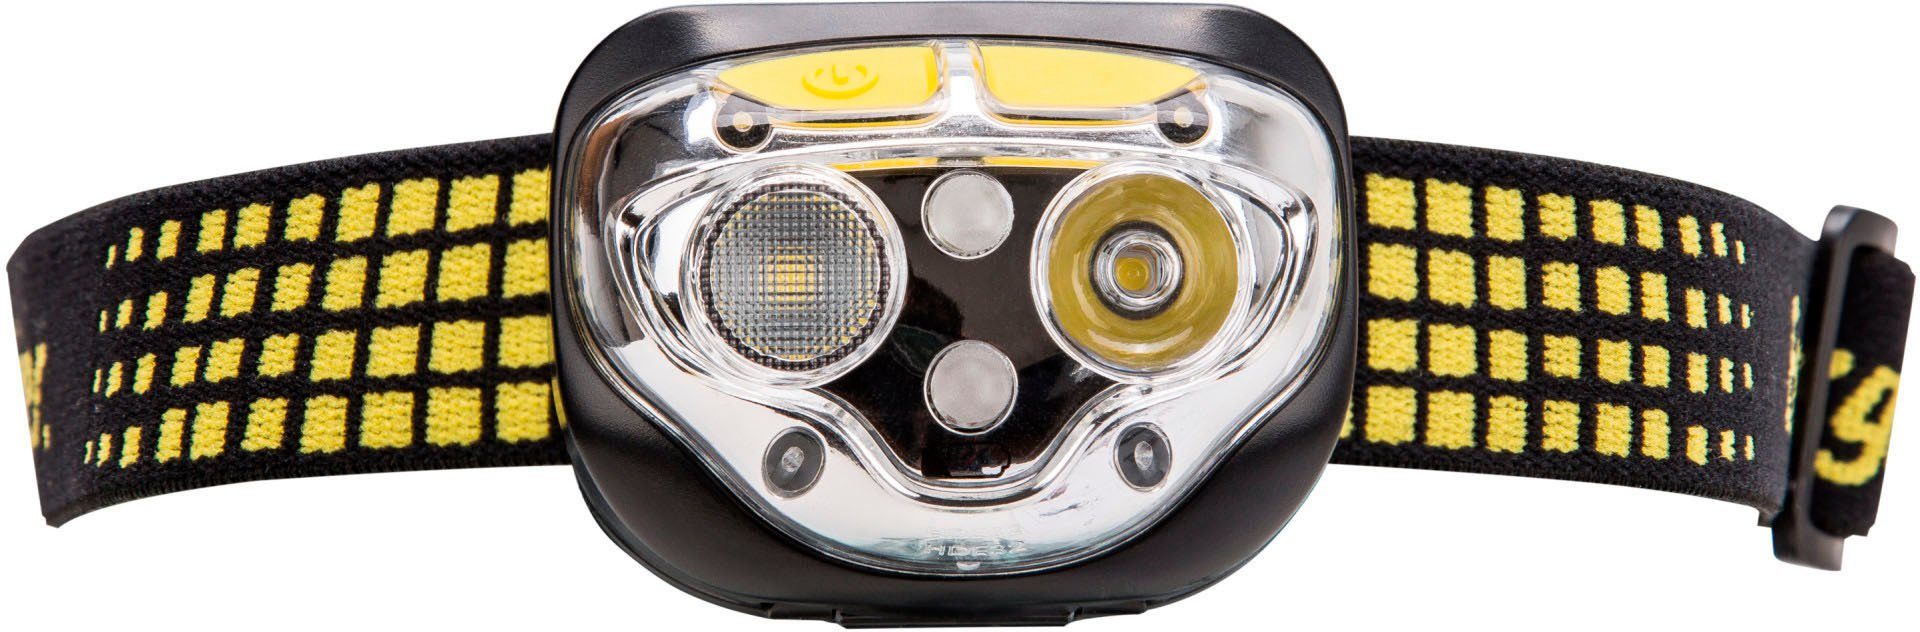 Ultra LED Stirnlampe Lumen 450 Energizer Vision